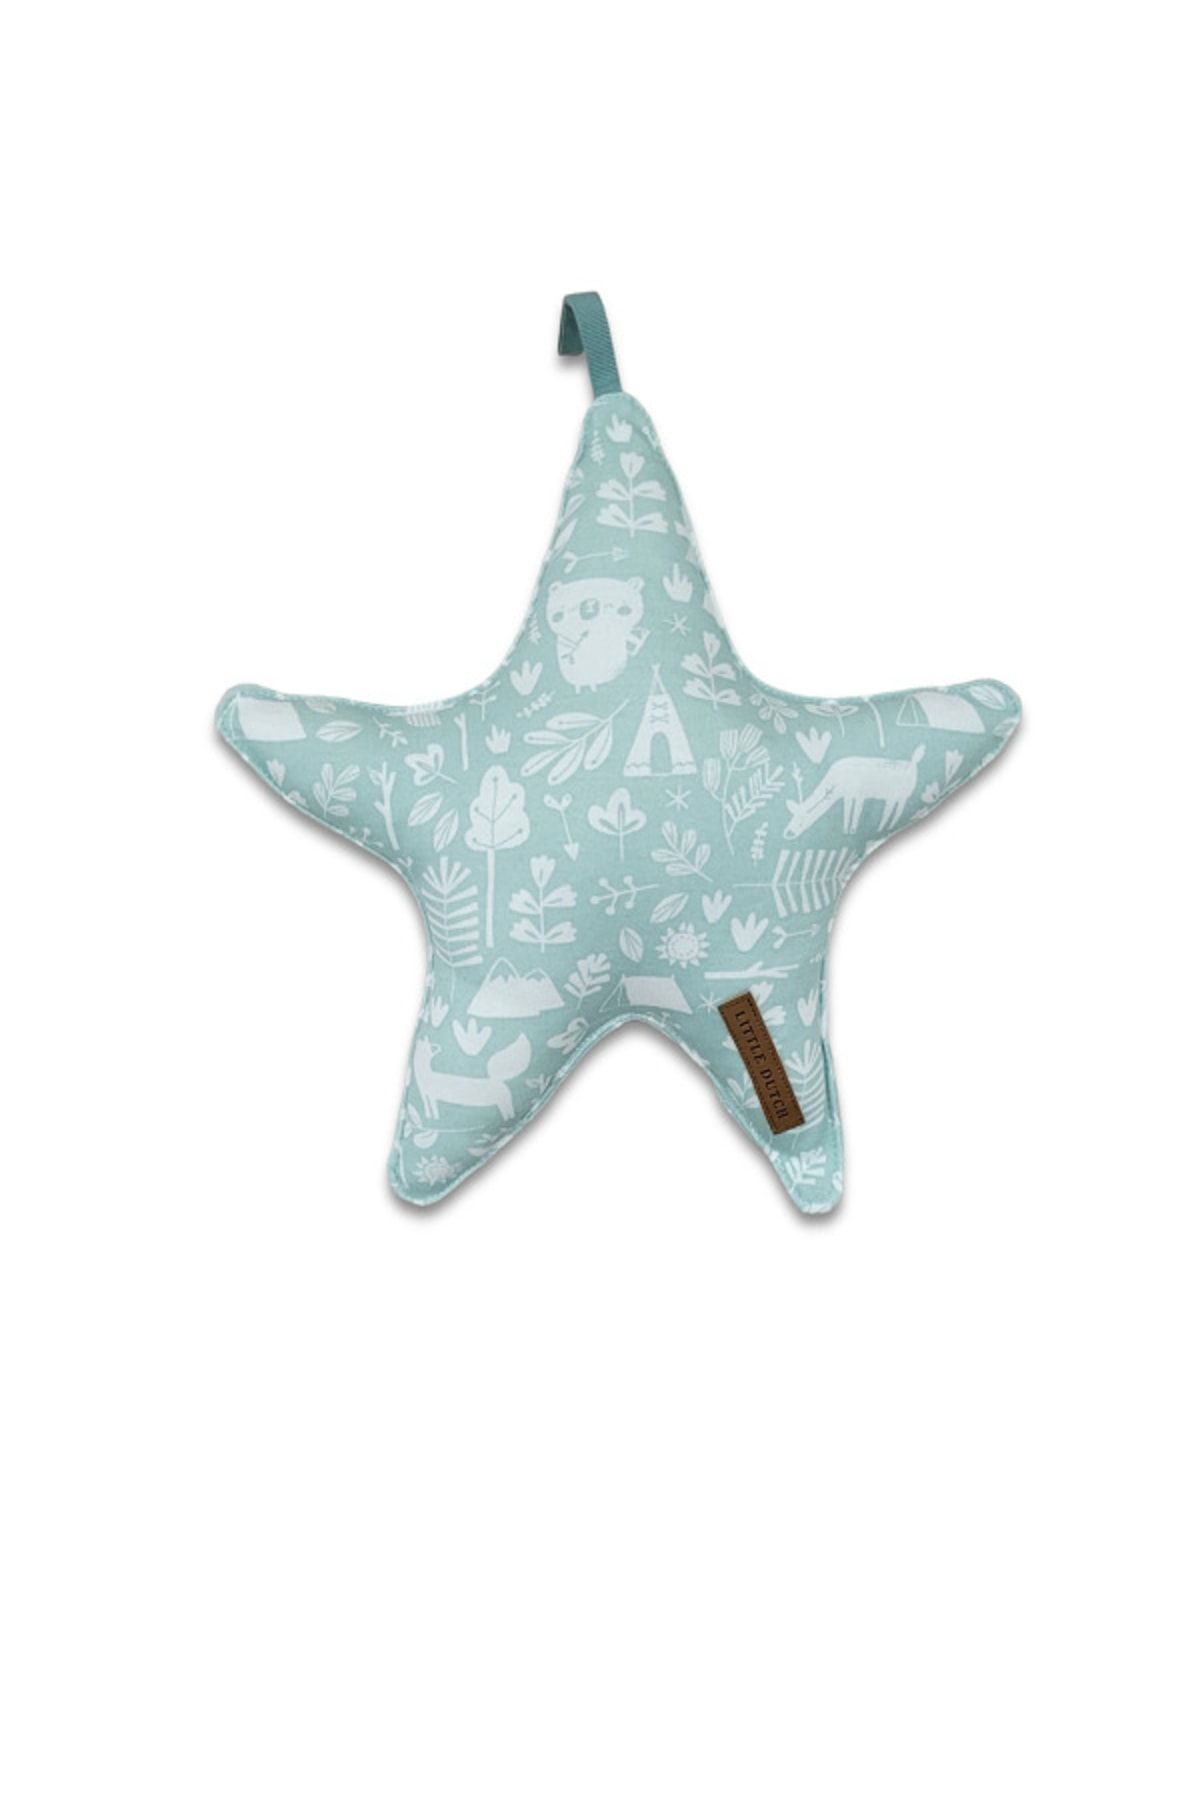 Alpar Tekstil Dekoratif Yıldız Bebek/çocuk Odası Yastığı - Desenli Mint